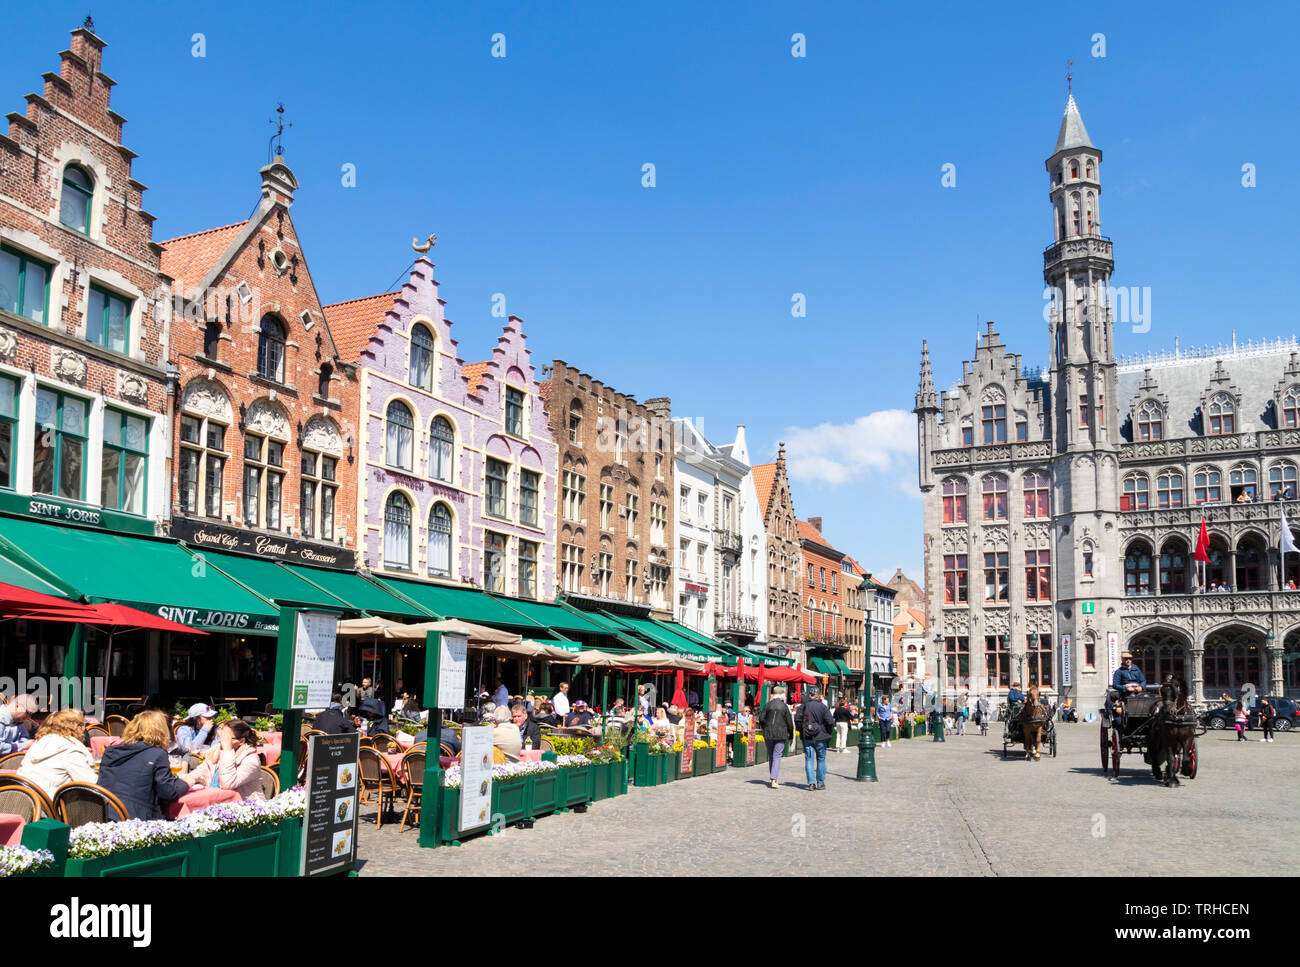 Les touristes de Bruges en calèche en passant devant les cafés près de la Cour provinciale Provinciaal Hof dans le Markt Bruges Belgique eu Europe centrale Banque D'Images